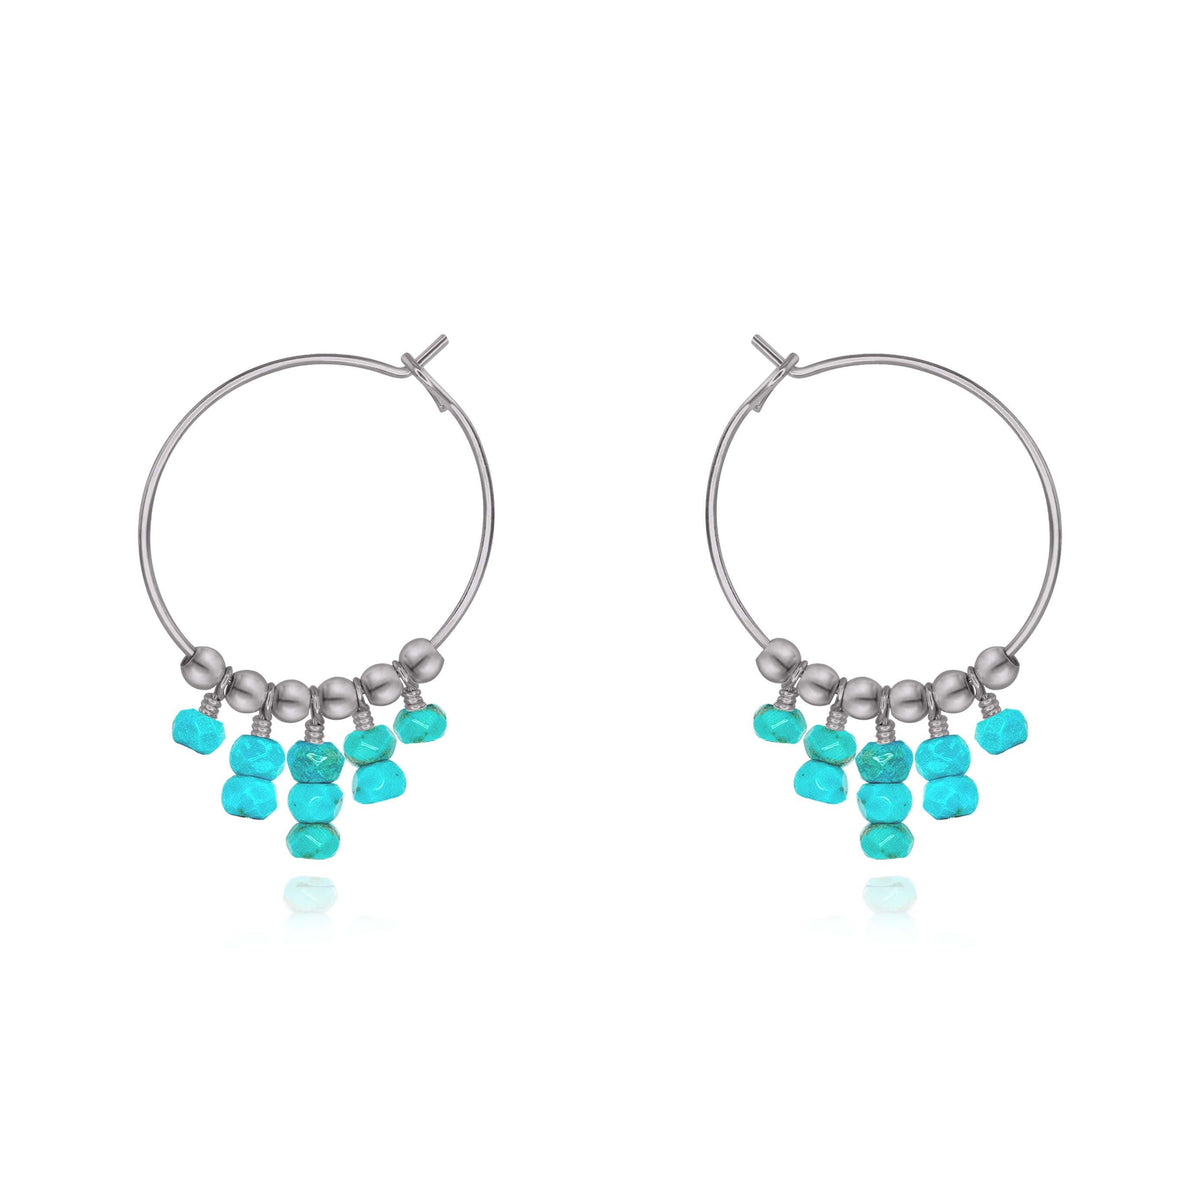 Hoop Earrings - Turquoise - Stainless Steel - Luna Tide Handmade Jewellery